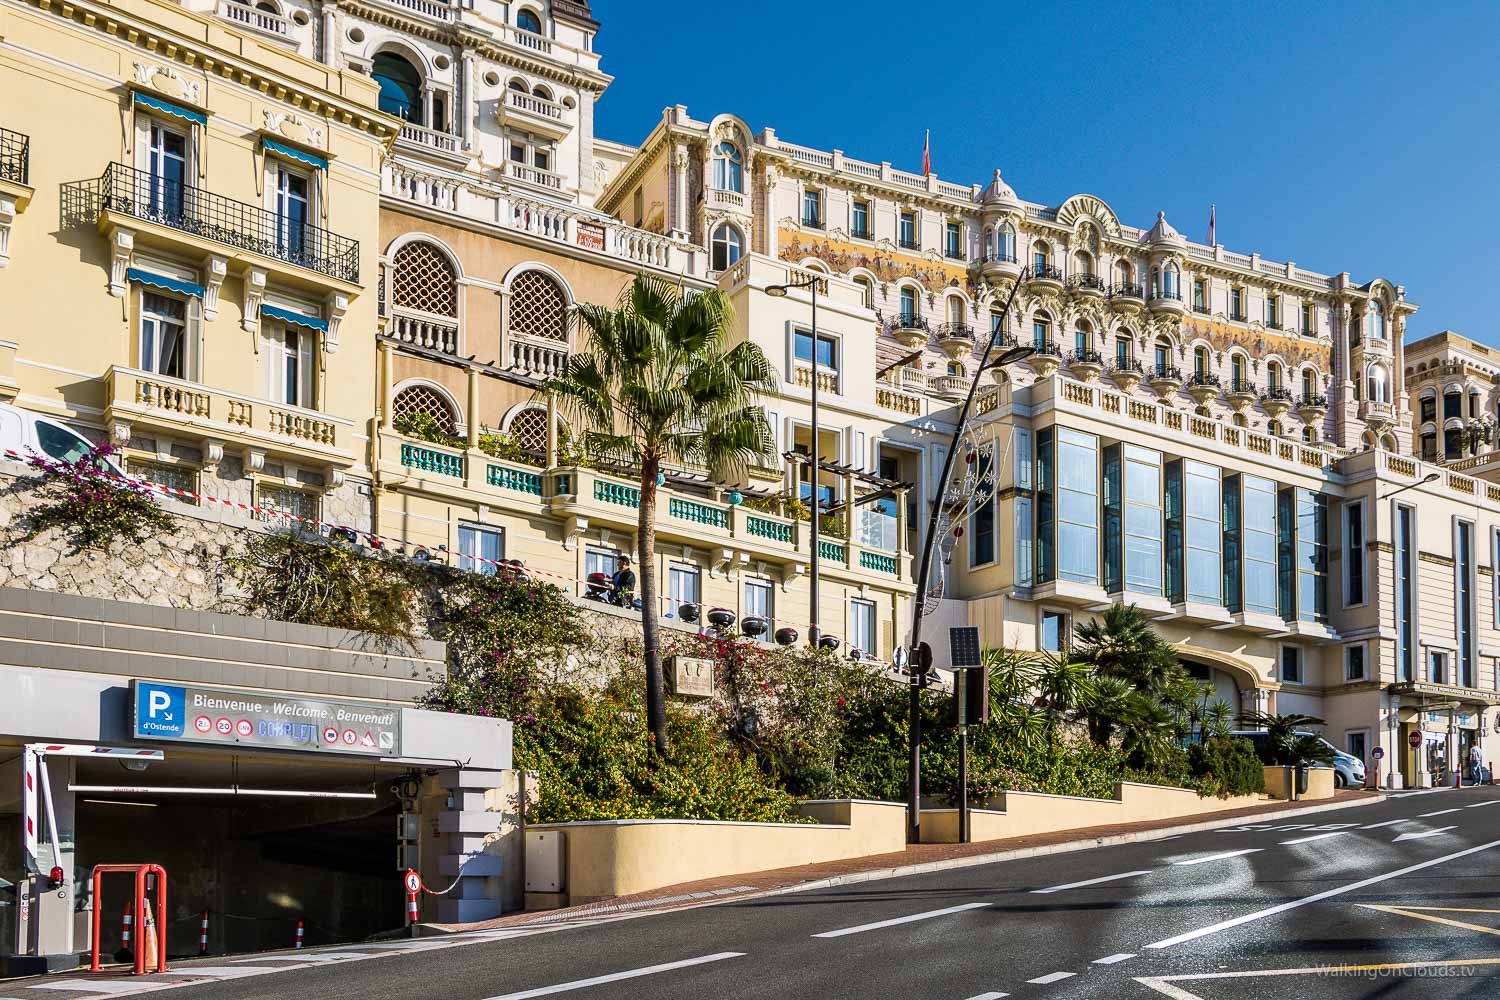 Monaco und Monte Carlo auf einer Kreuzfahrt als Kreuzfahrtblogger erleben! Das bekannte Casino, der Tunnel aus der Formel 1, der Blick auf das Mittelmeer und die TUI Mein Schiff 5 - welche Ausflüge gibt es?